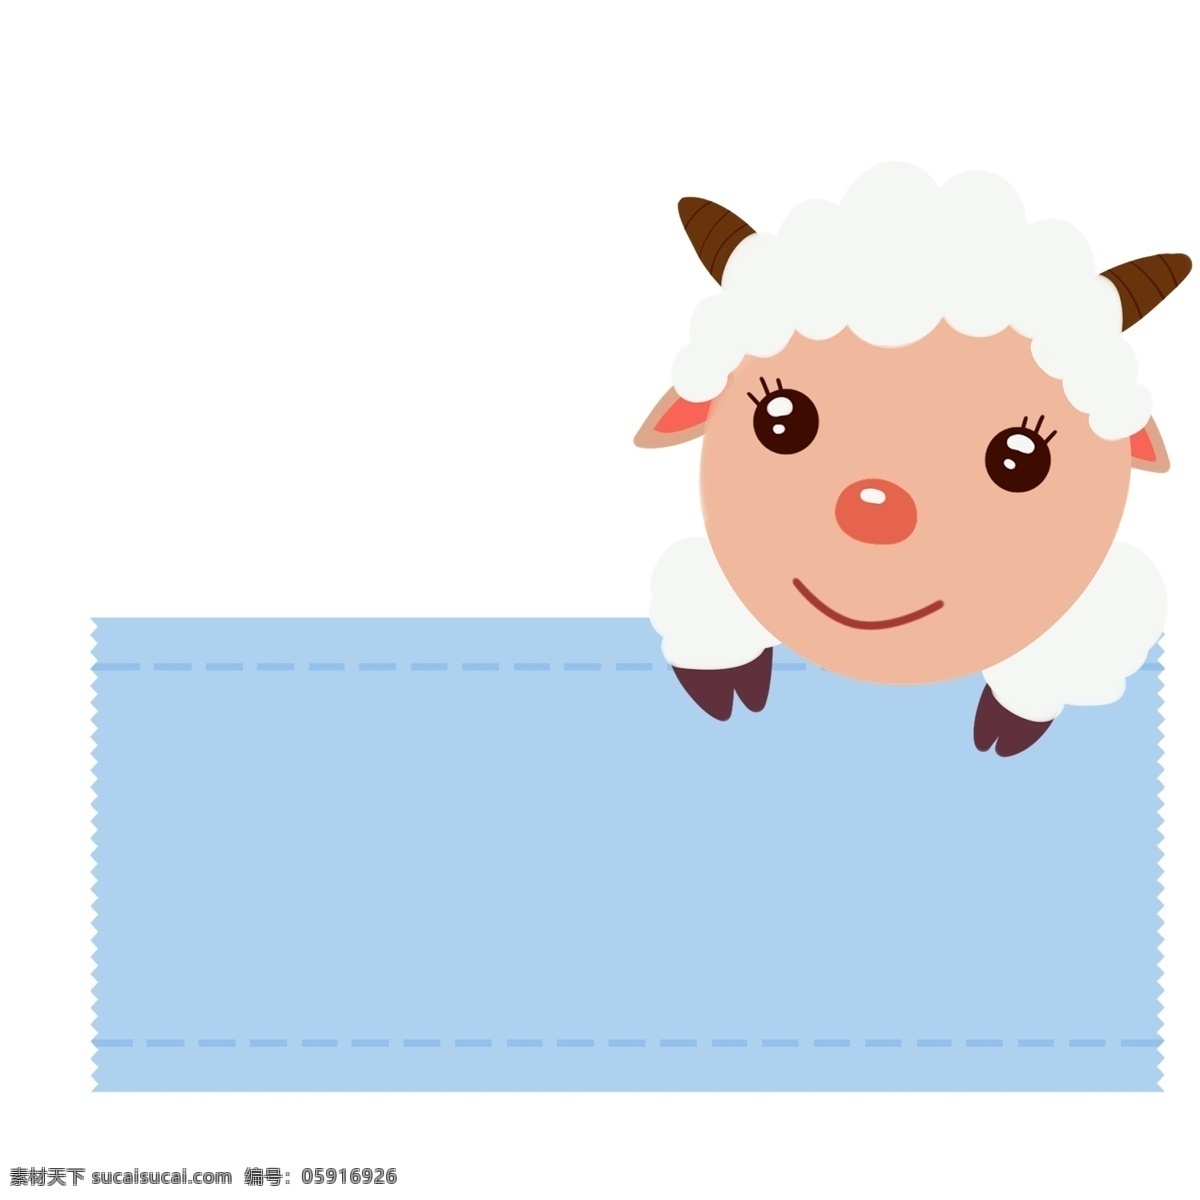 手绘 小羊 边框 插画 白色的小羊 小绵羊边框 可爱的小动物 可爱的边框 装饰边框插画 手绘边框